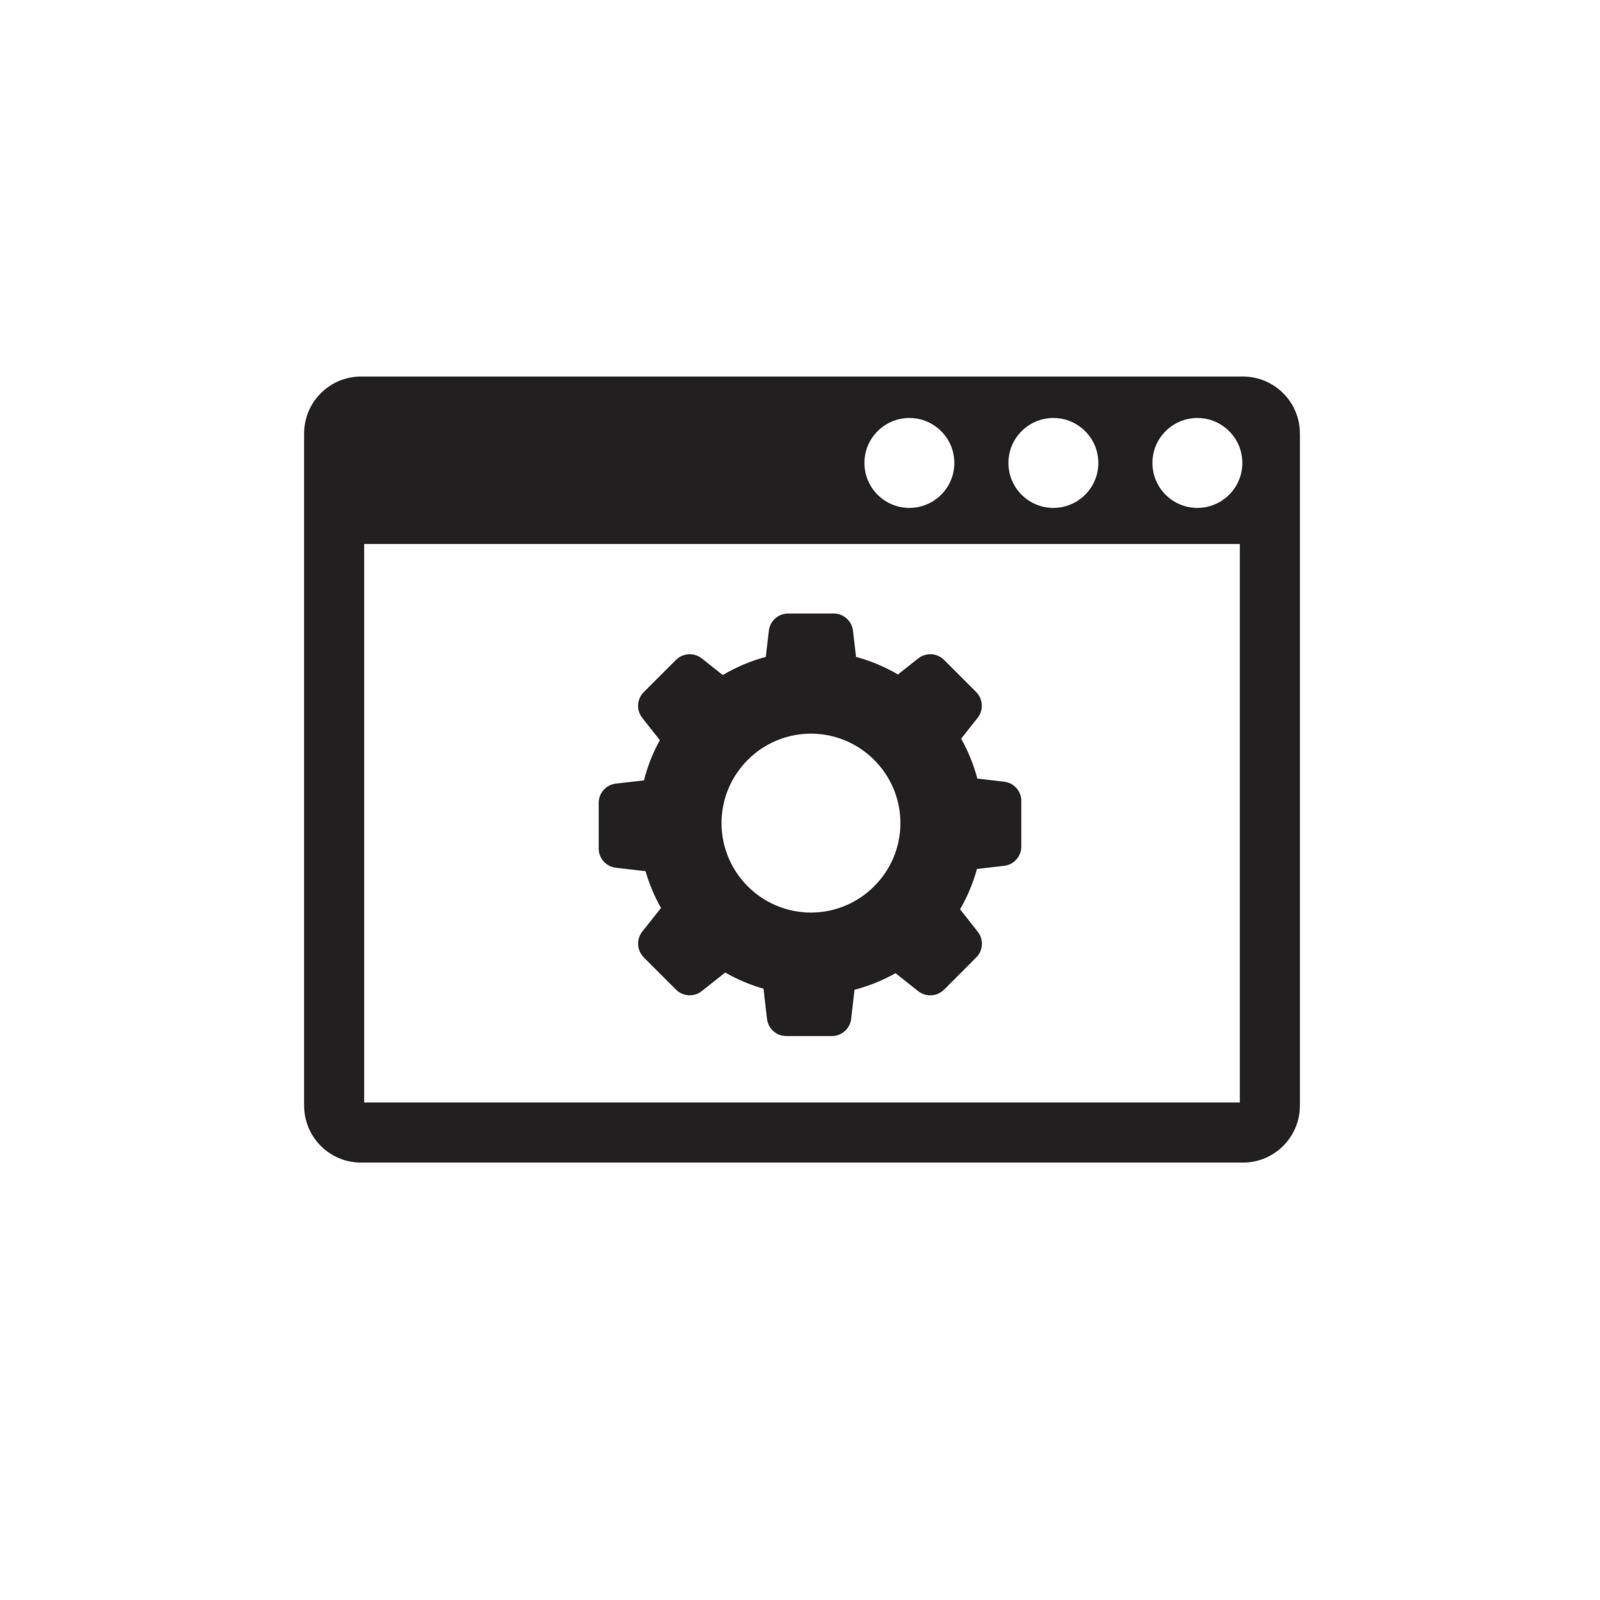 icon of program window